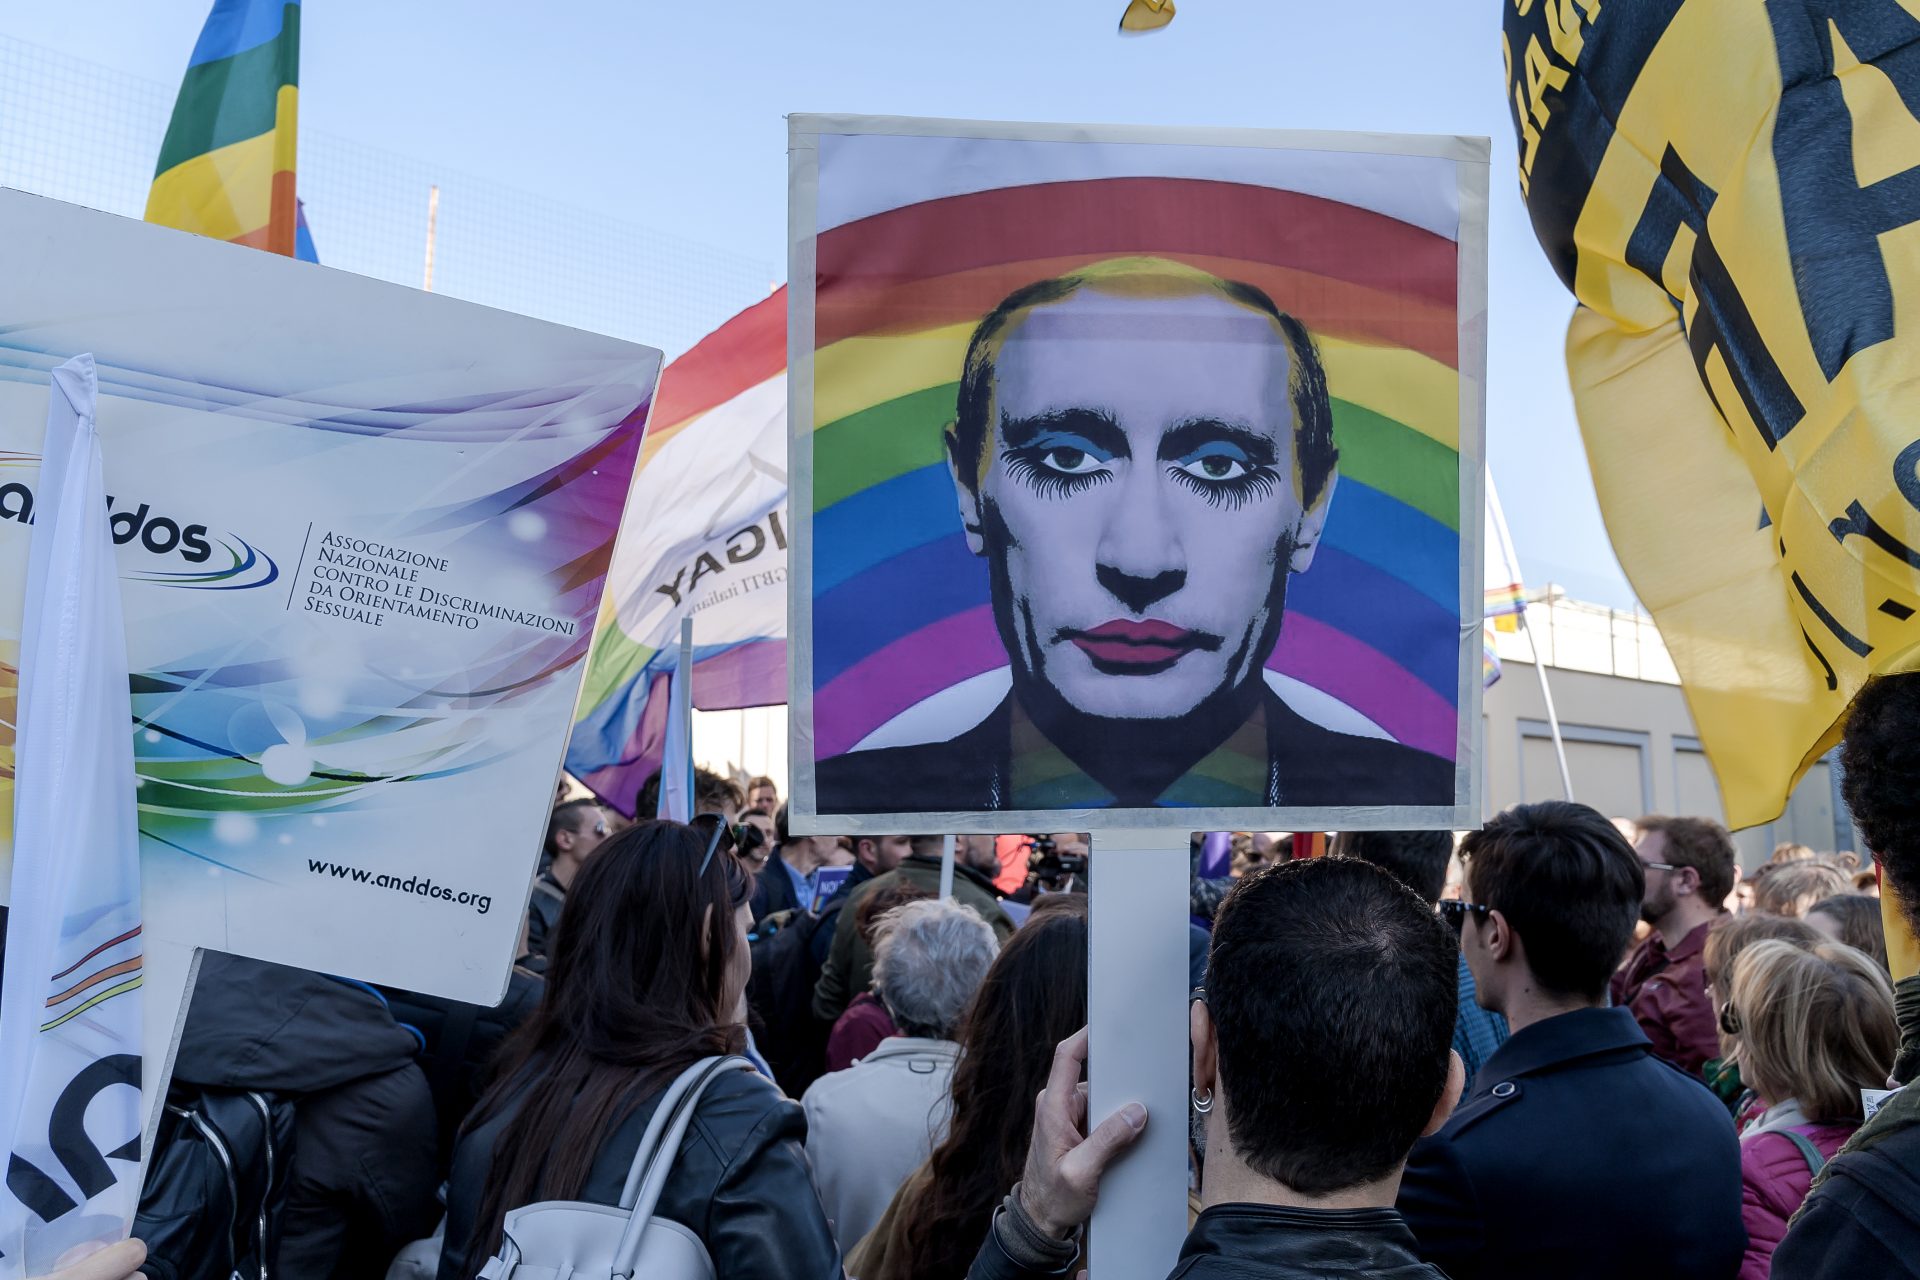 Internationale LGBT-Bewegung wird in Russland als extremistische Organisation eingestuft